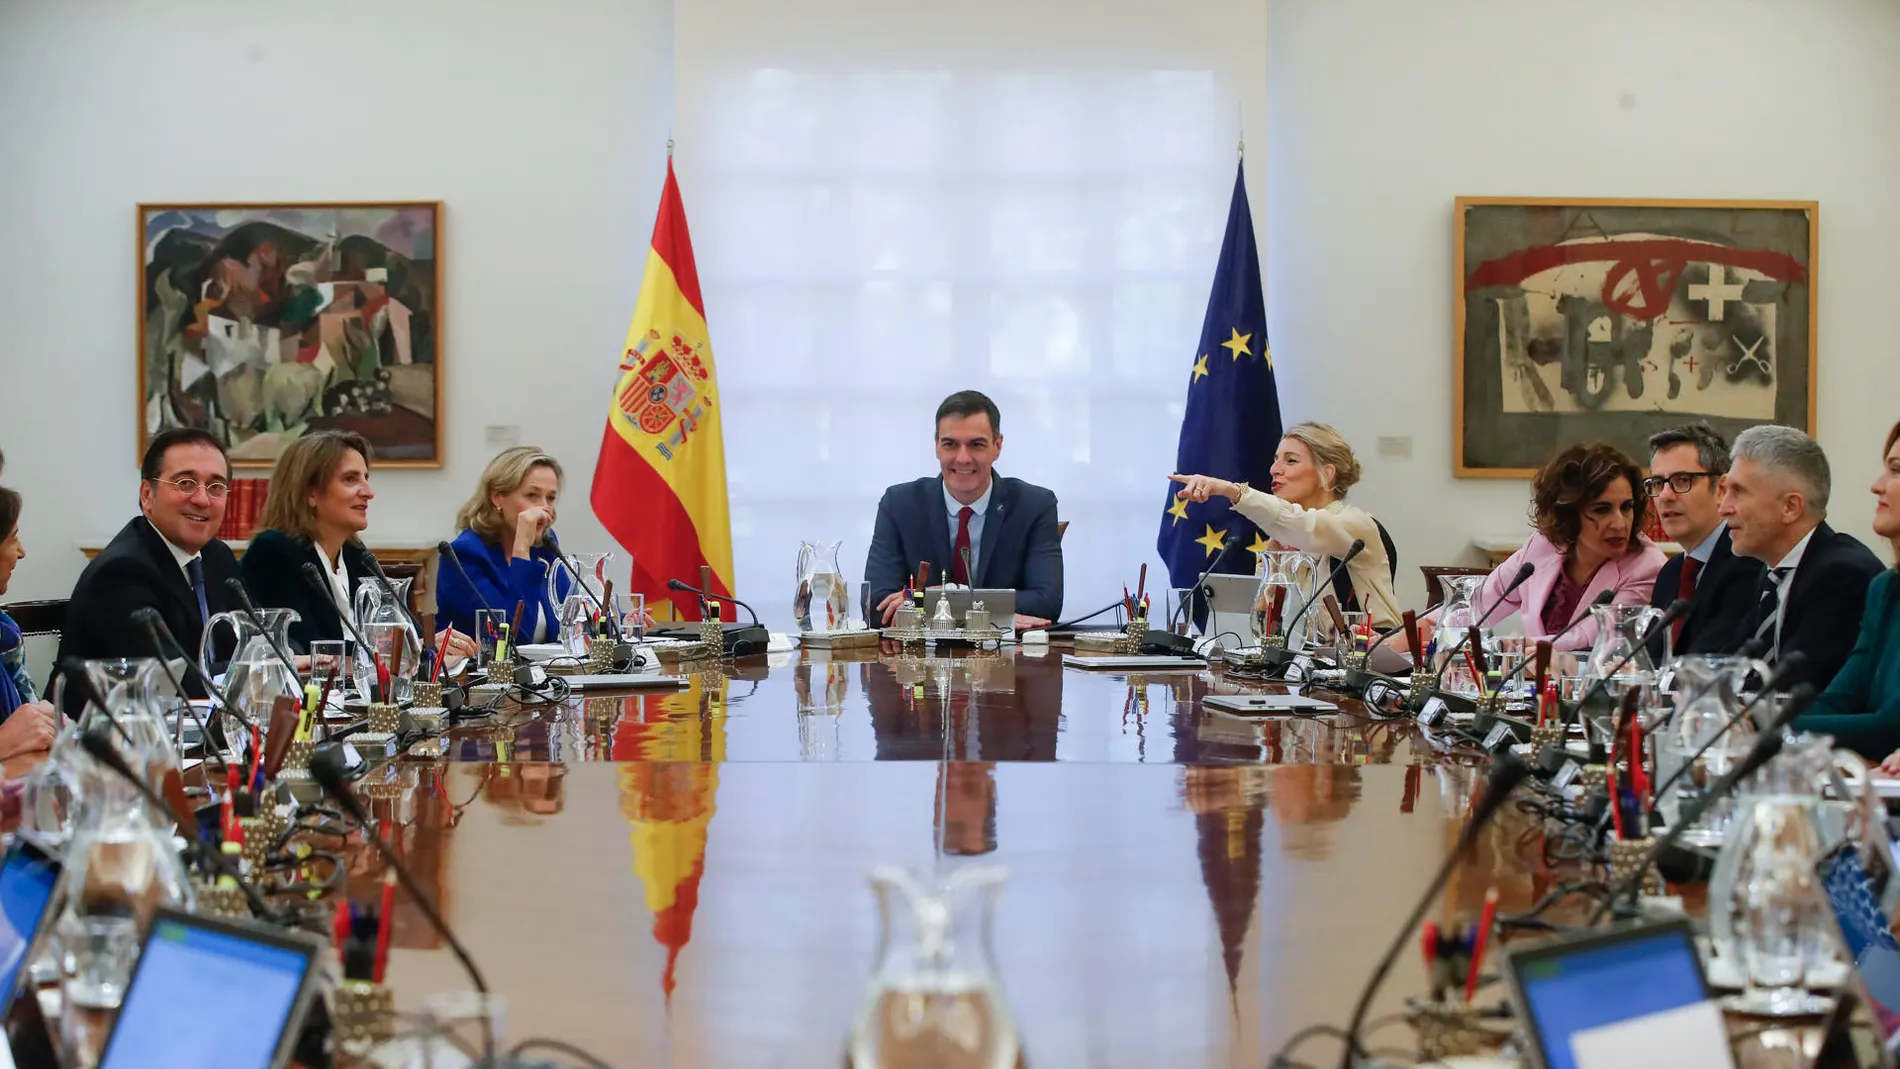 Pedro Sánchez preside el primer Consejo de Ministros de su nuevo Gobierno